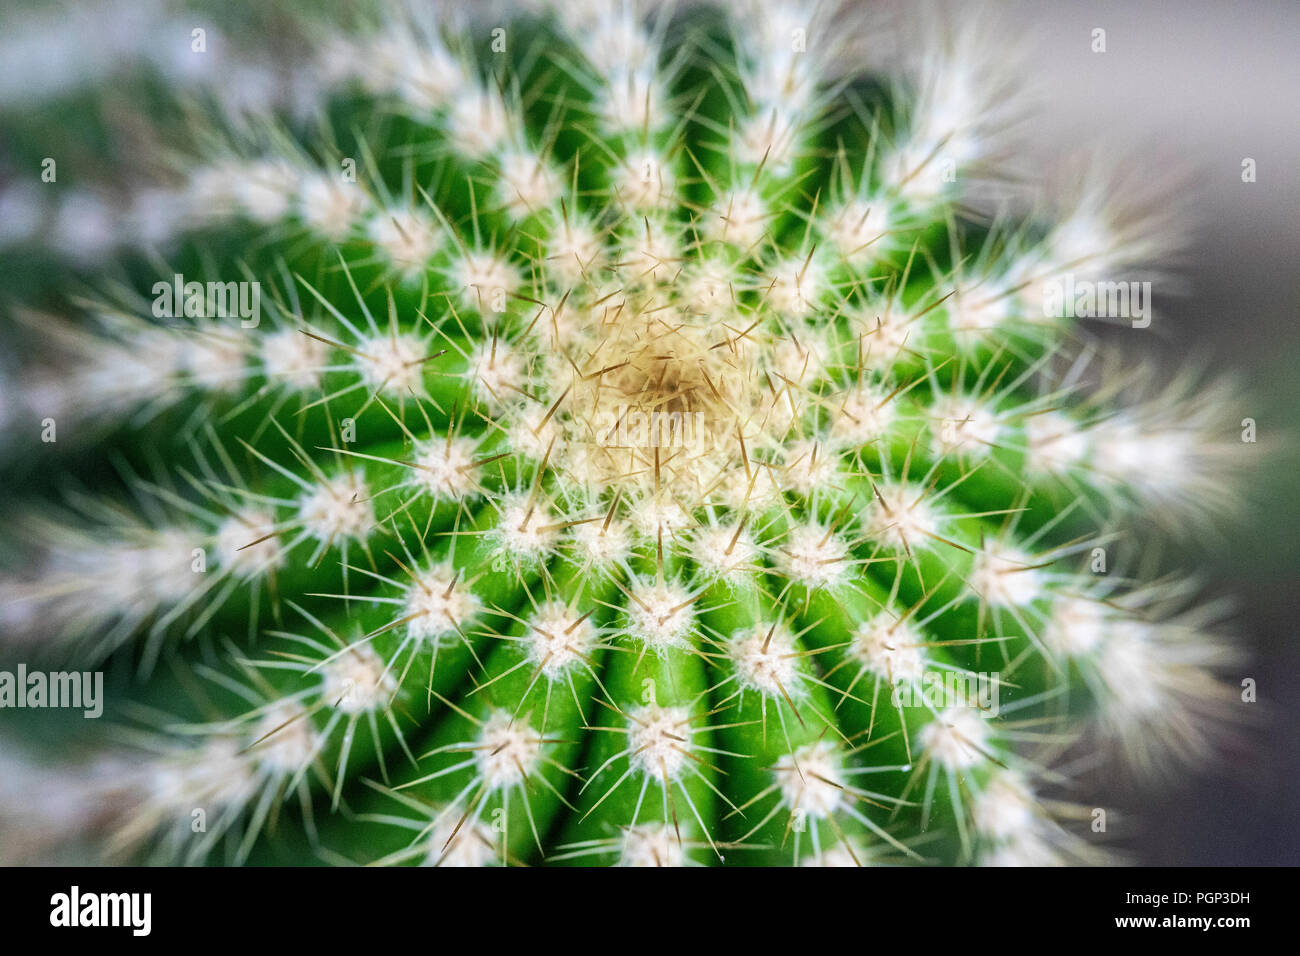 Cactus detail, top of cactus, close-up Stock Photo